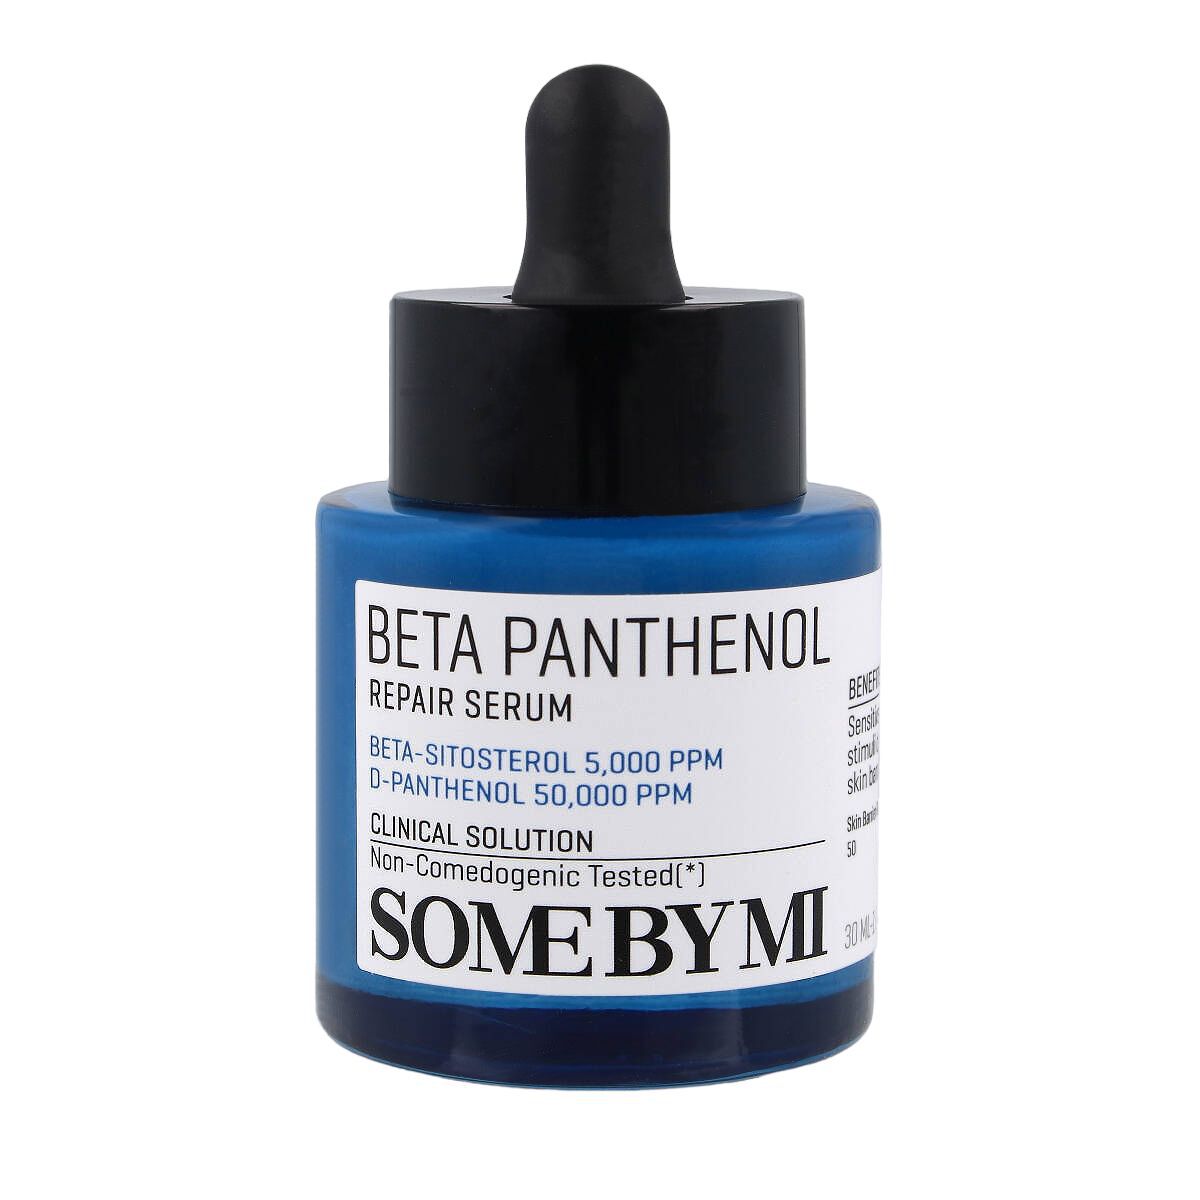 Восстанавливающая сыворотка для лица Some By Mi Beta Panthenol, 30 мл сыворотка для лица bellflower сыворотка для лица с пантенолом panthenol 30% serum